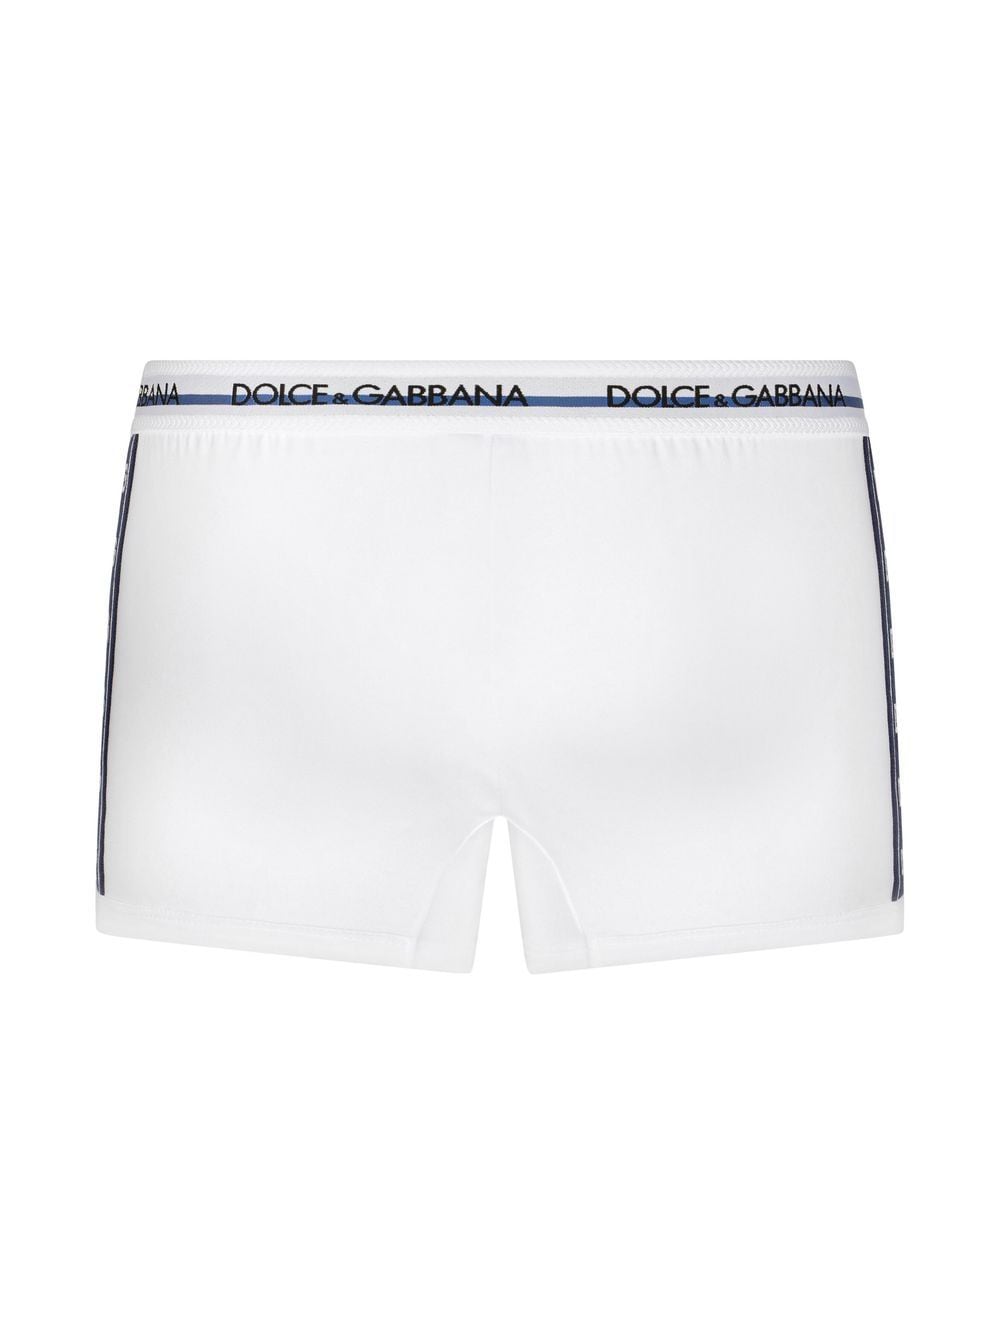 Dolce & Gabbana DG-logo long-leg Boxer Briefs - Farfetch